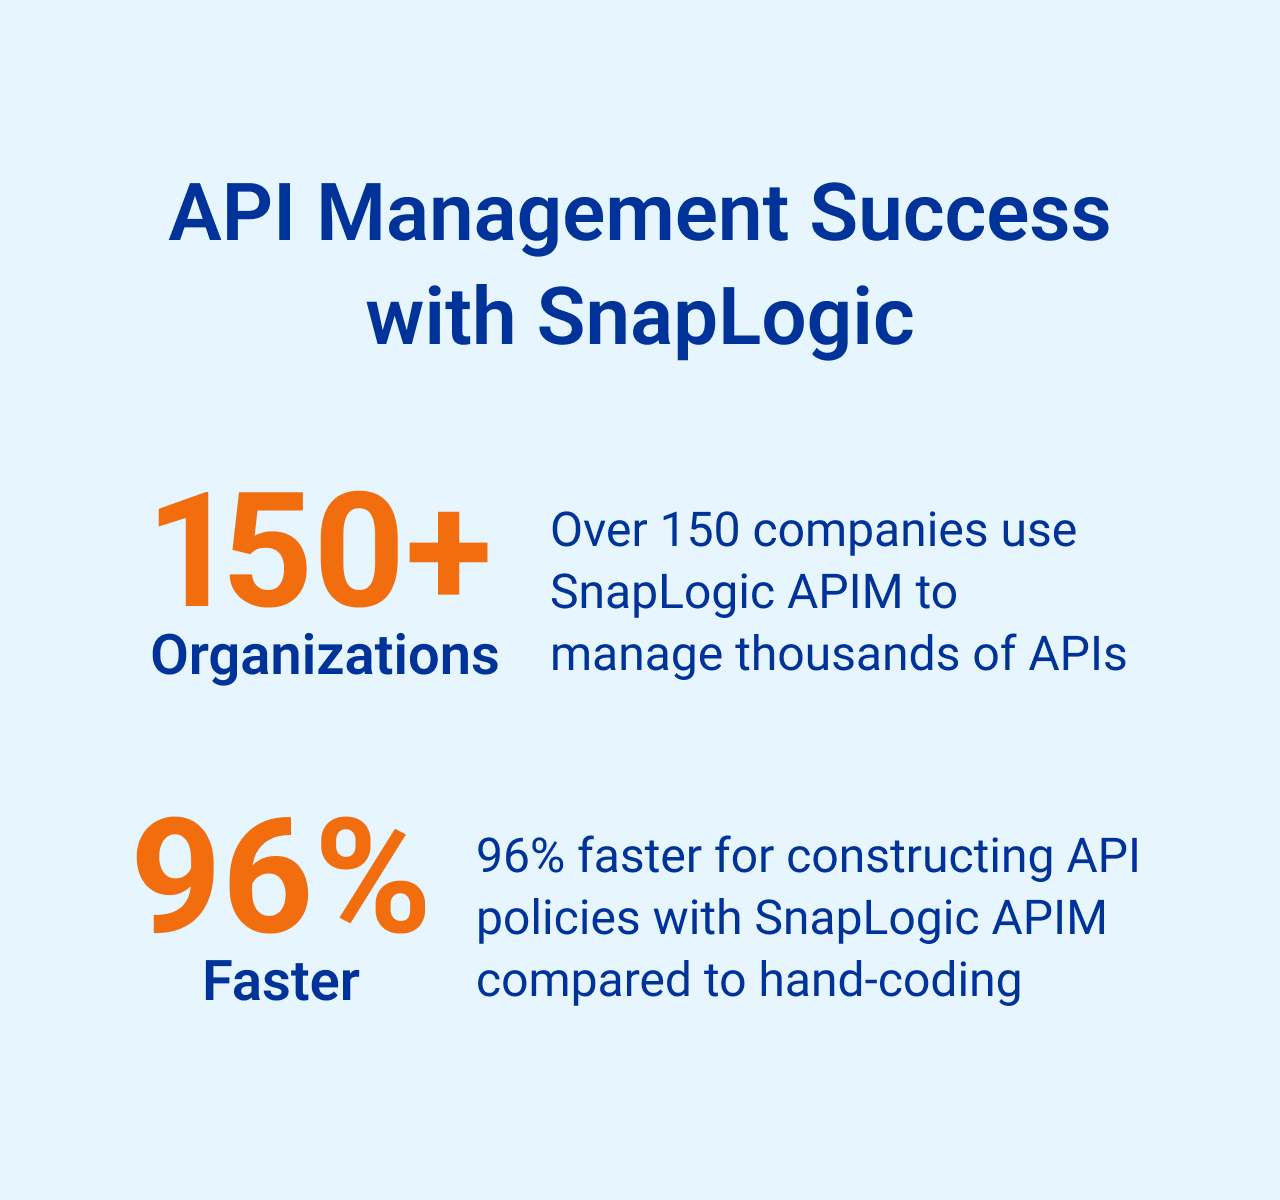 API Management Success with SnapLogic stats